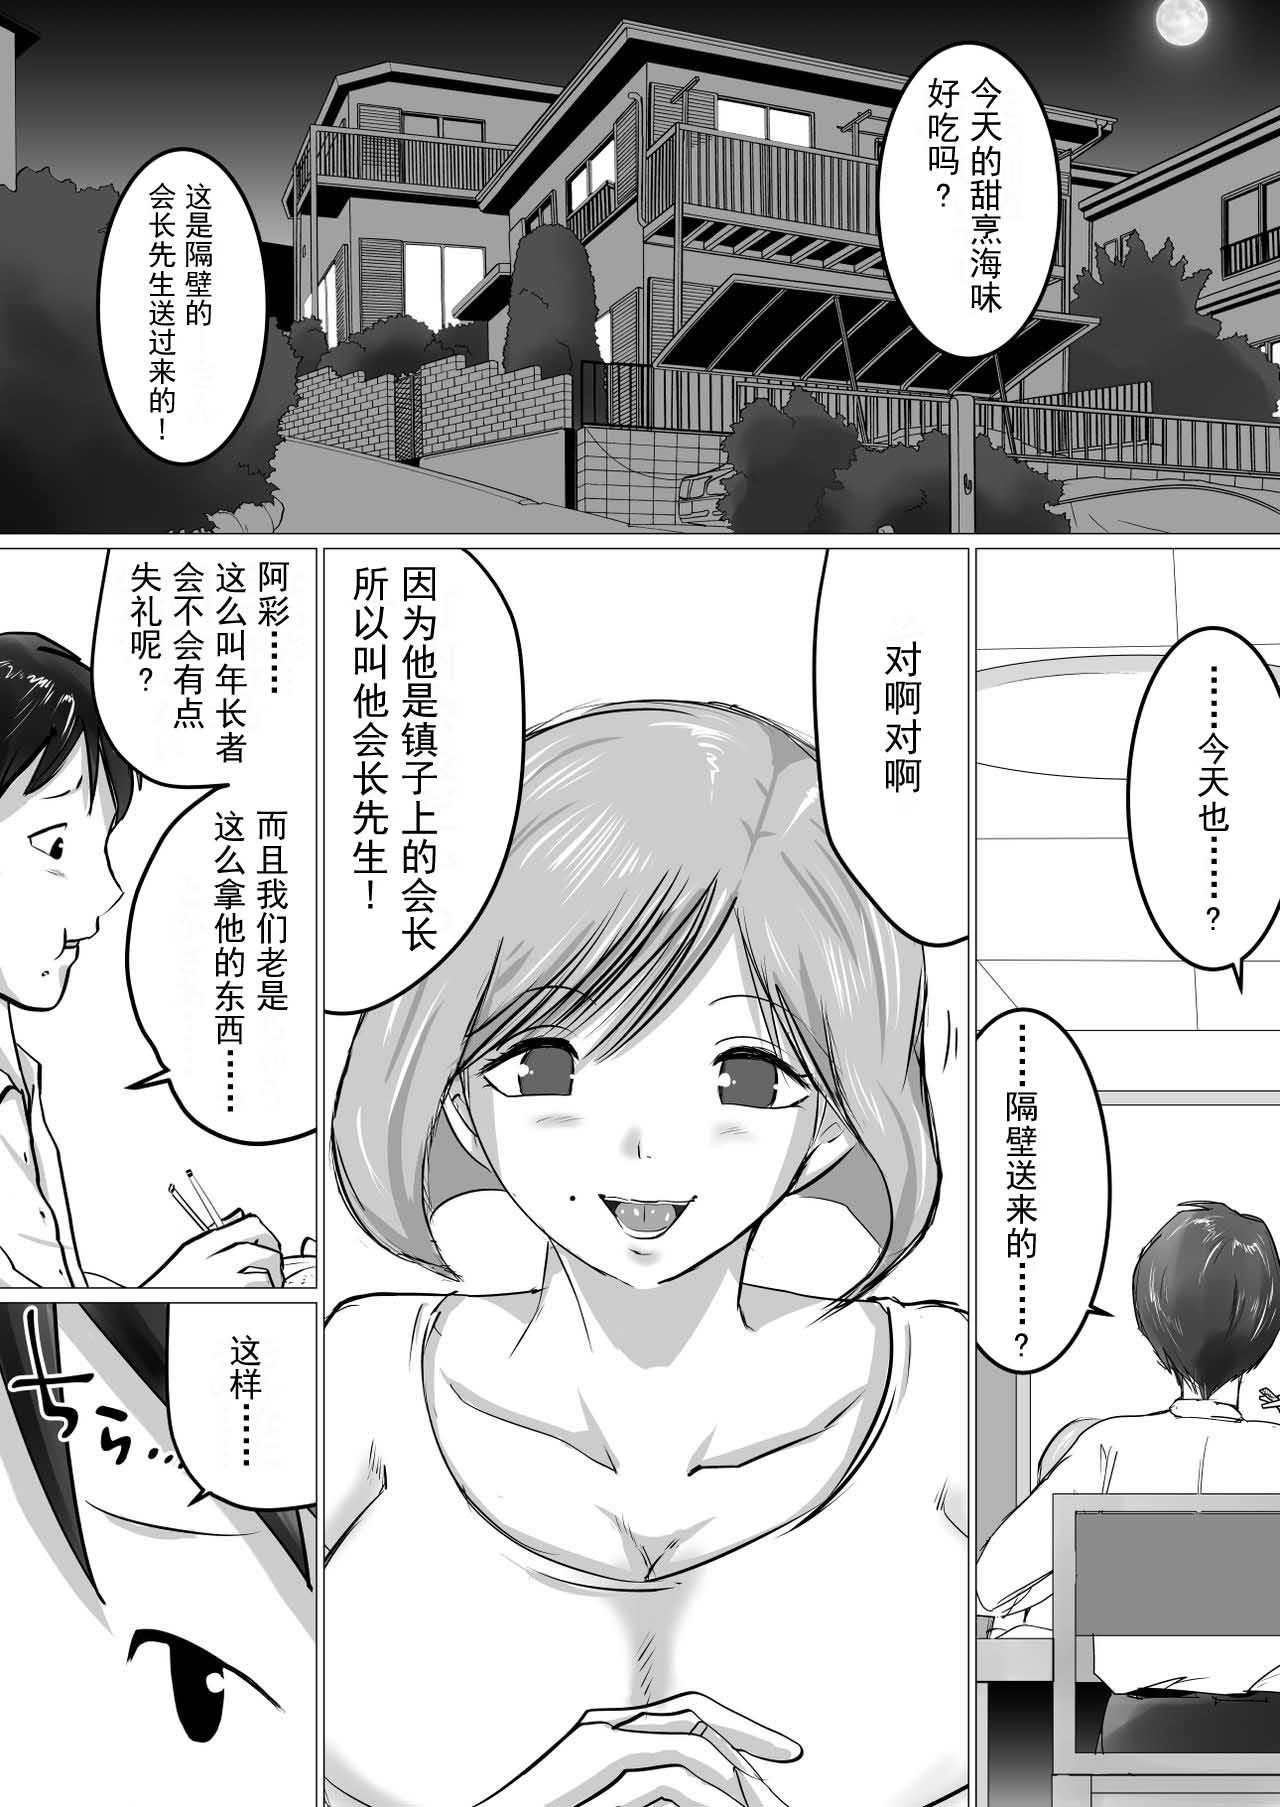 Butthole [Makoto Shiyaka] Rinjin ni Dakare Tsuzukeru to iu koto[Chinese]【不可视汉化】 - Original Brazilian - Page 2